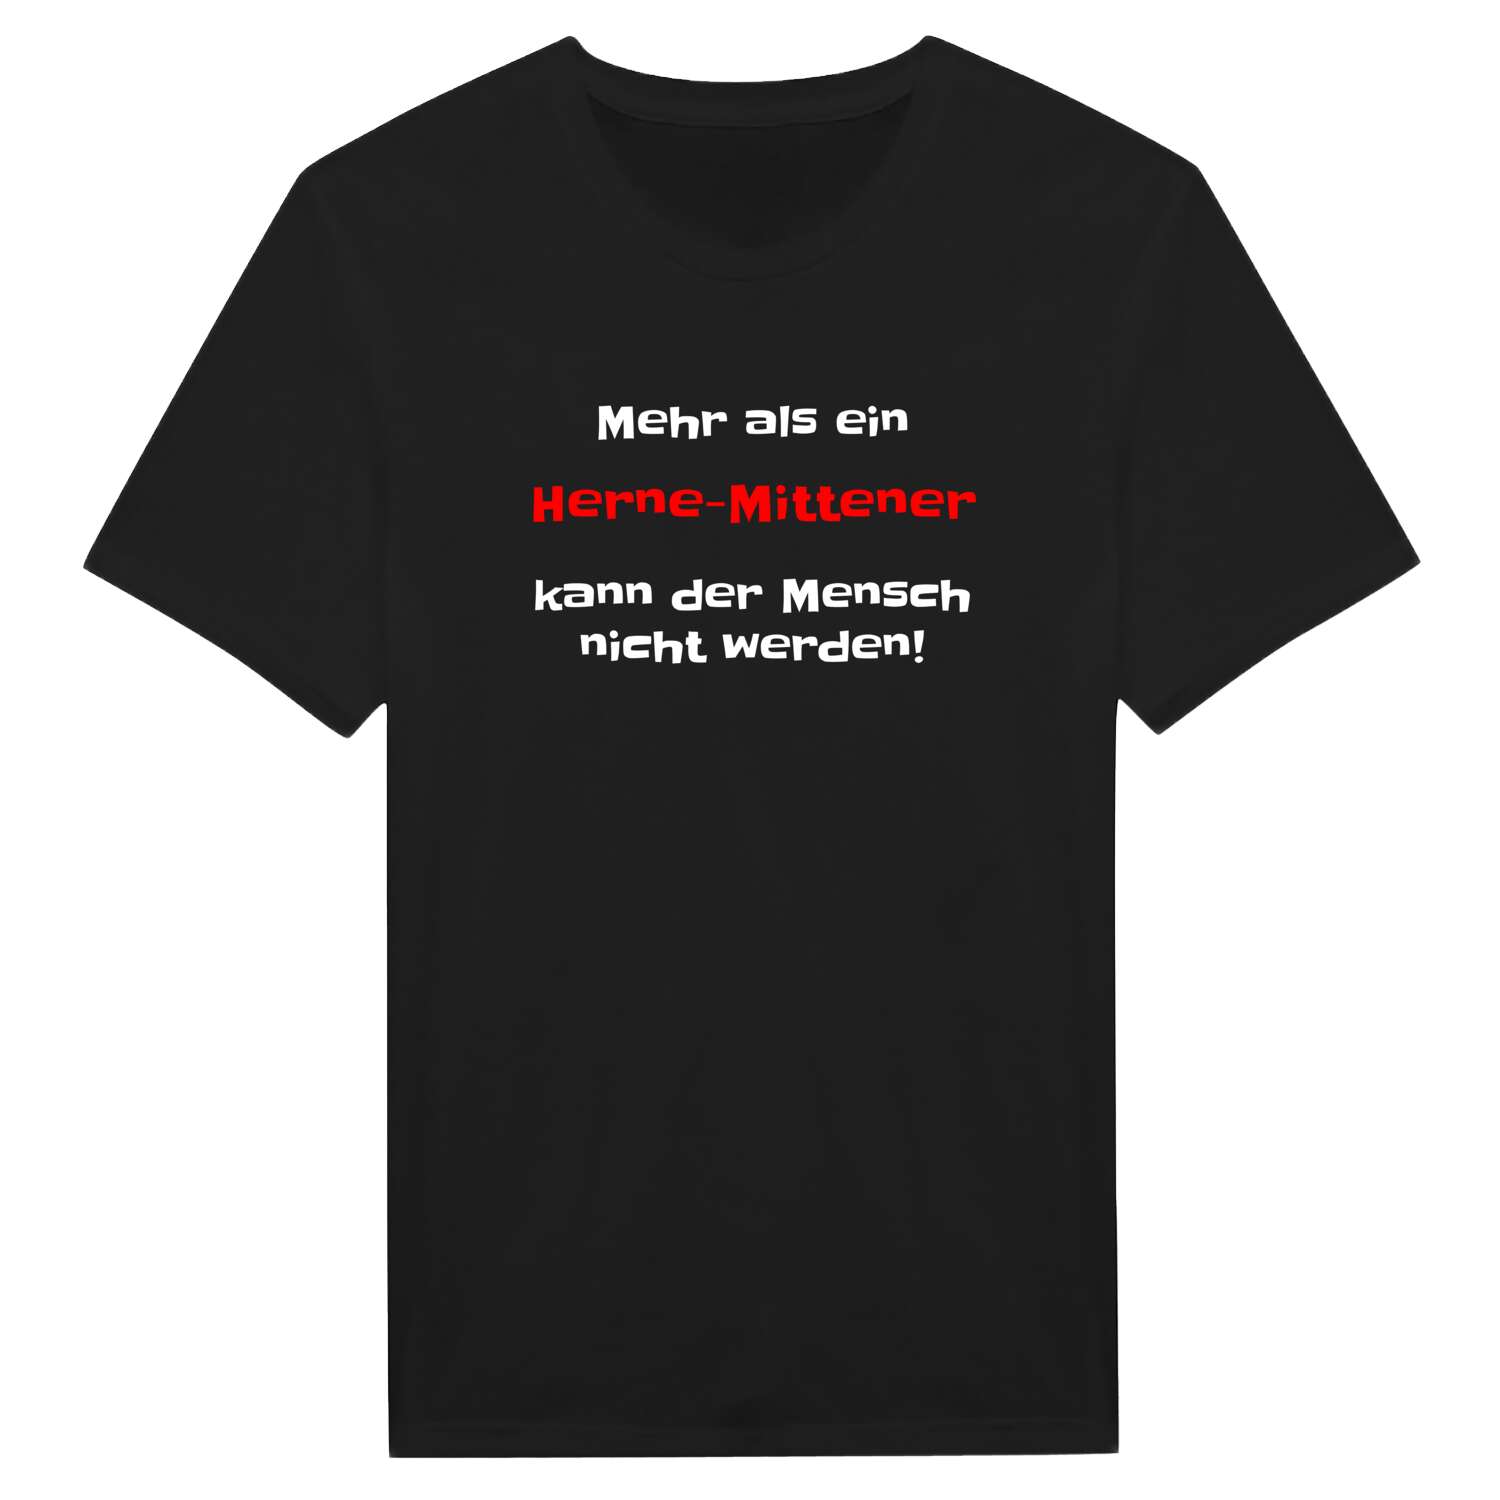 Herne-Mitte T-Shirt »Mehr als ein«